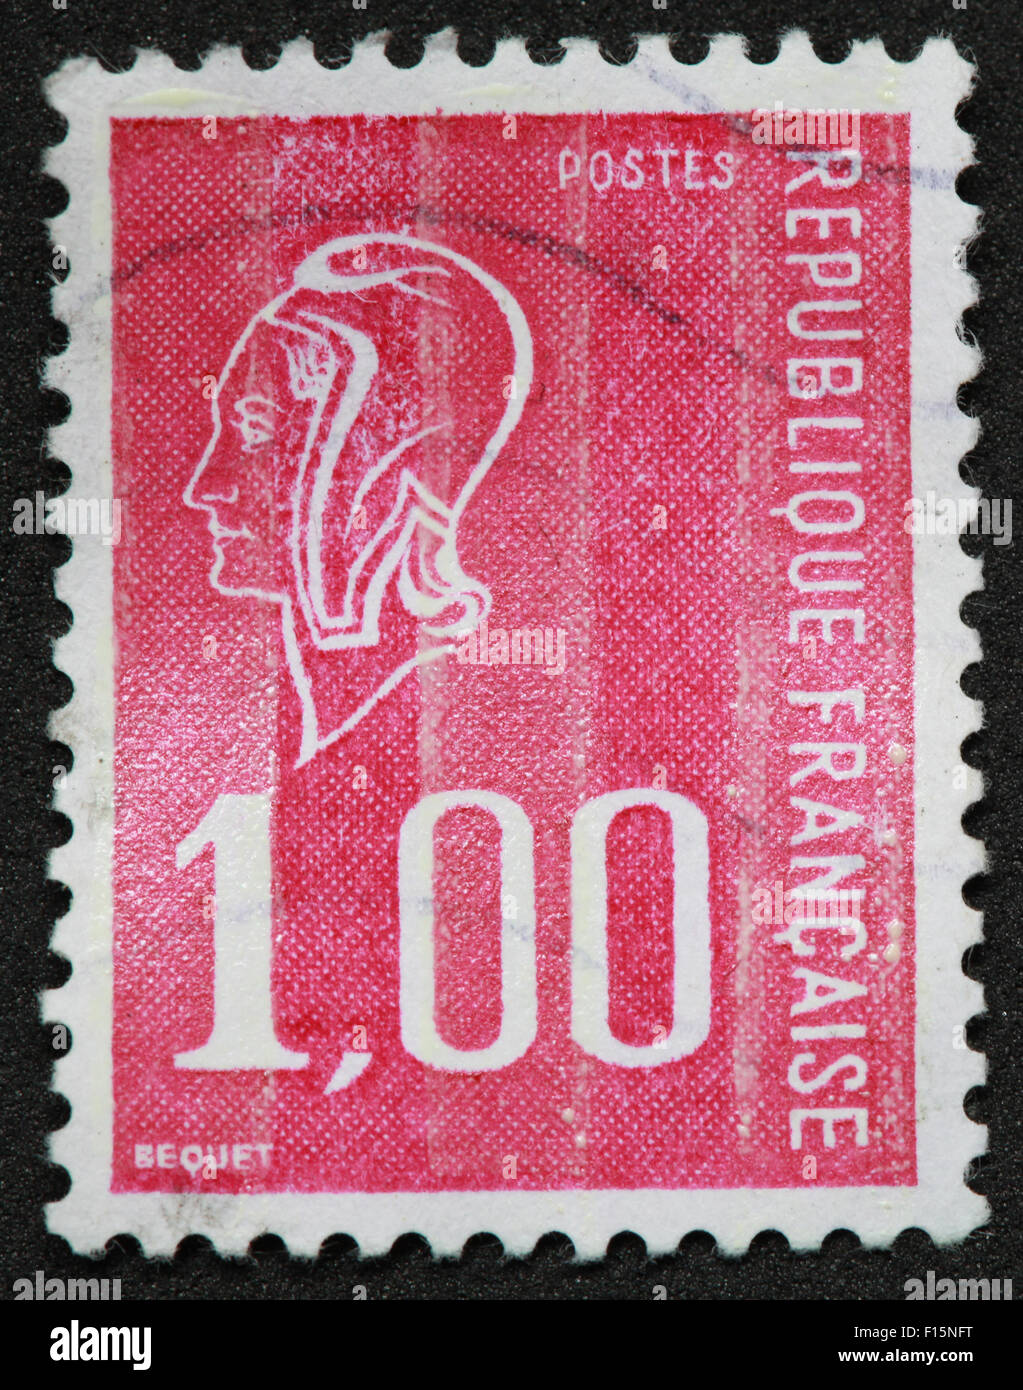 1f 1,00 Postes Republique francaise BEQUET visage rose rouge Stamp Banque D'Images